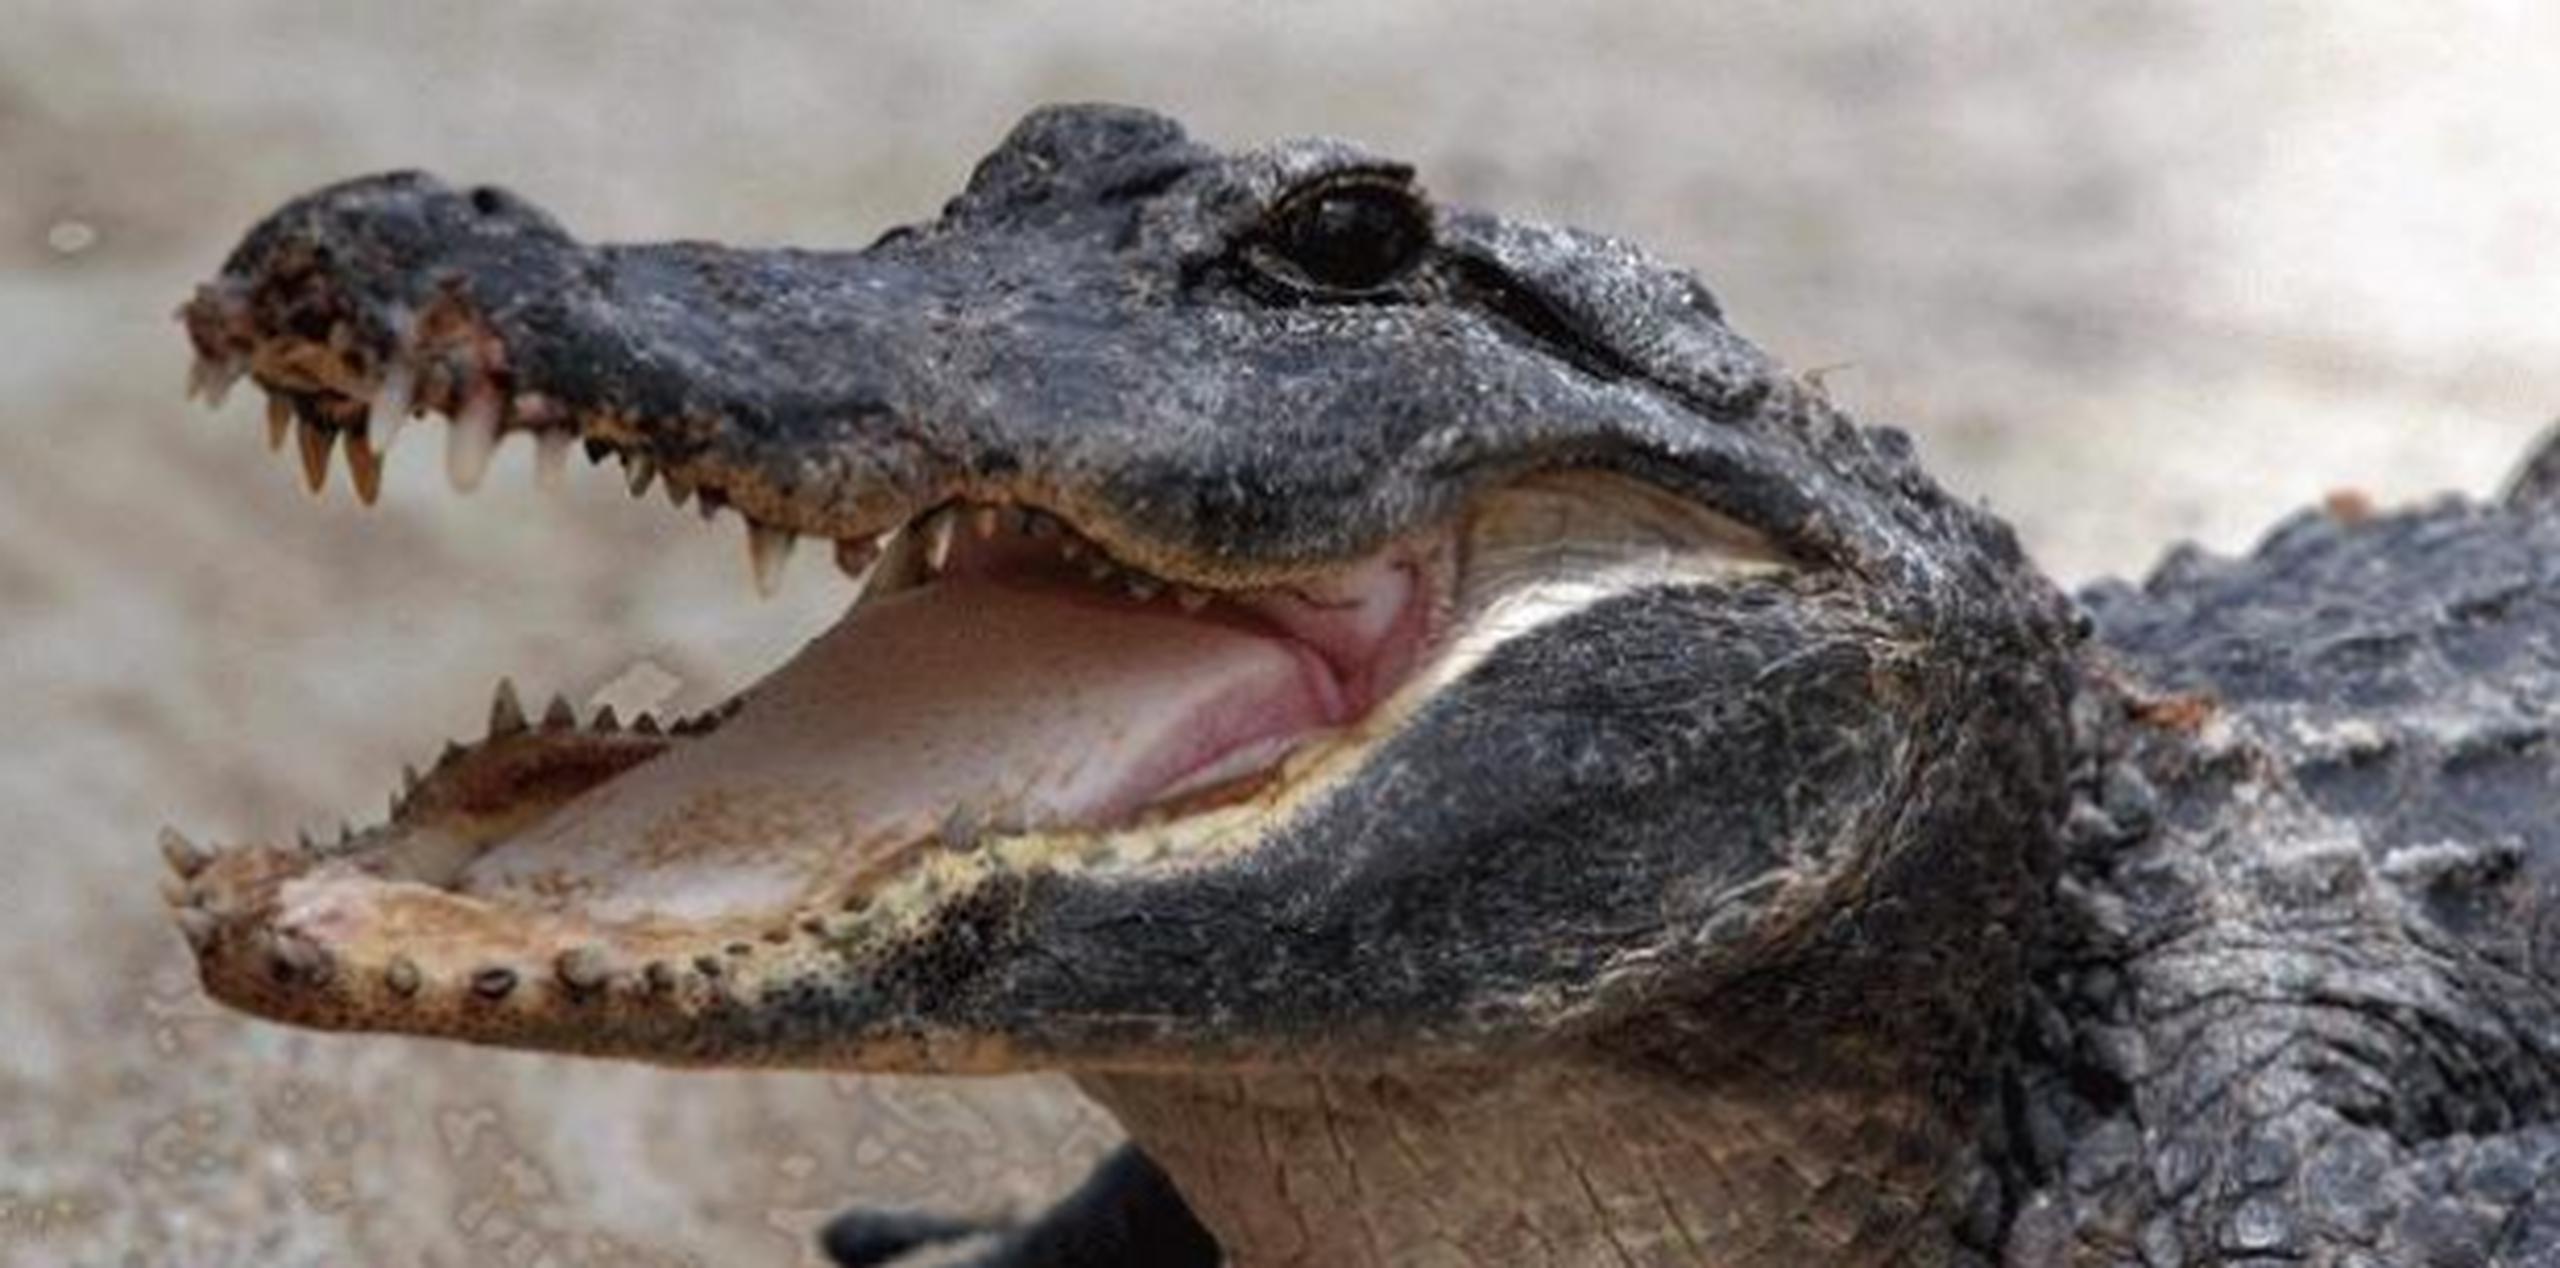 Este es el segundo caso de muerte por ataque de caimán en lo que va de año en Florida. (Archivo)